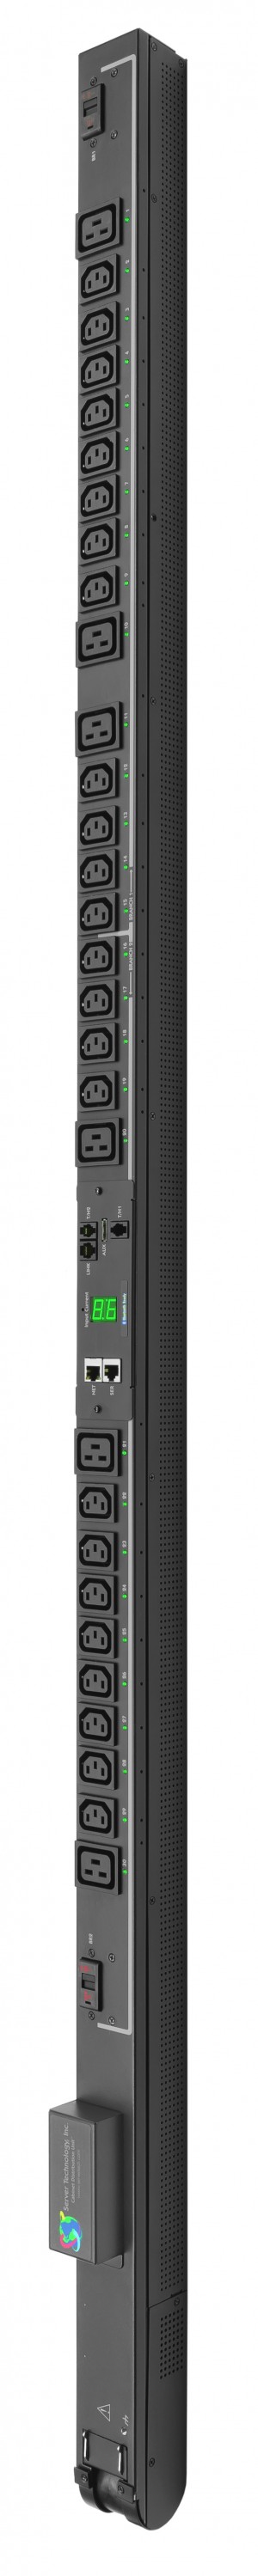 Servertech PRO2â„¢ Switched POPS STV-6501 3.3kW - 7.3kW 1-Ph (24) C13 &(6) C19 outlets Rack PDU - STV-6501A